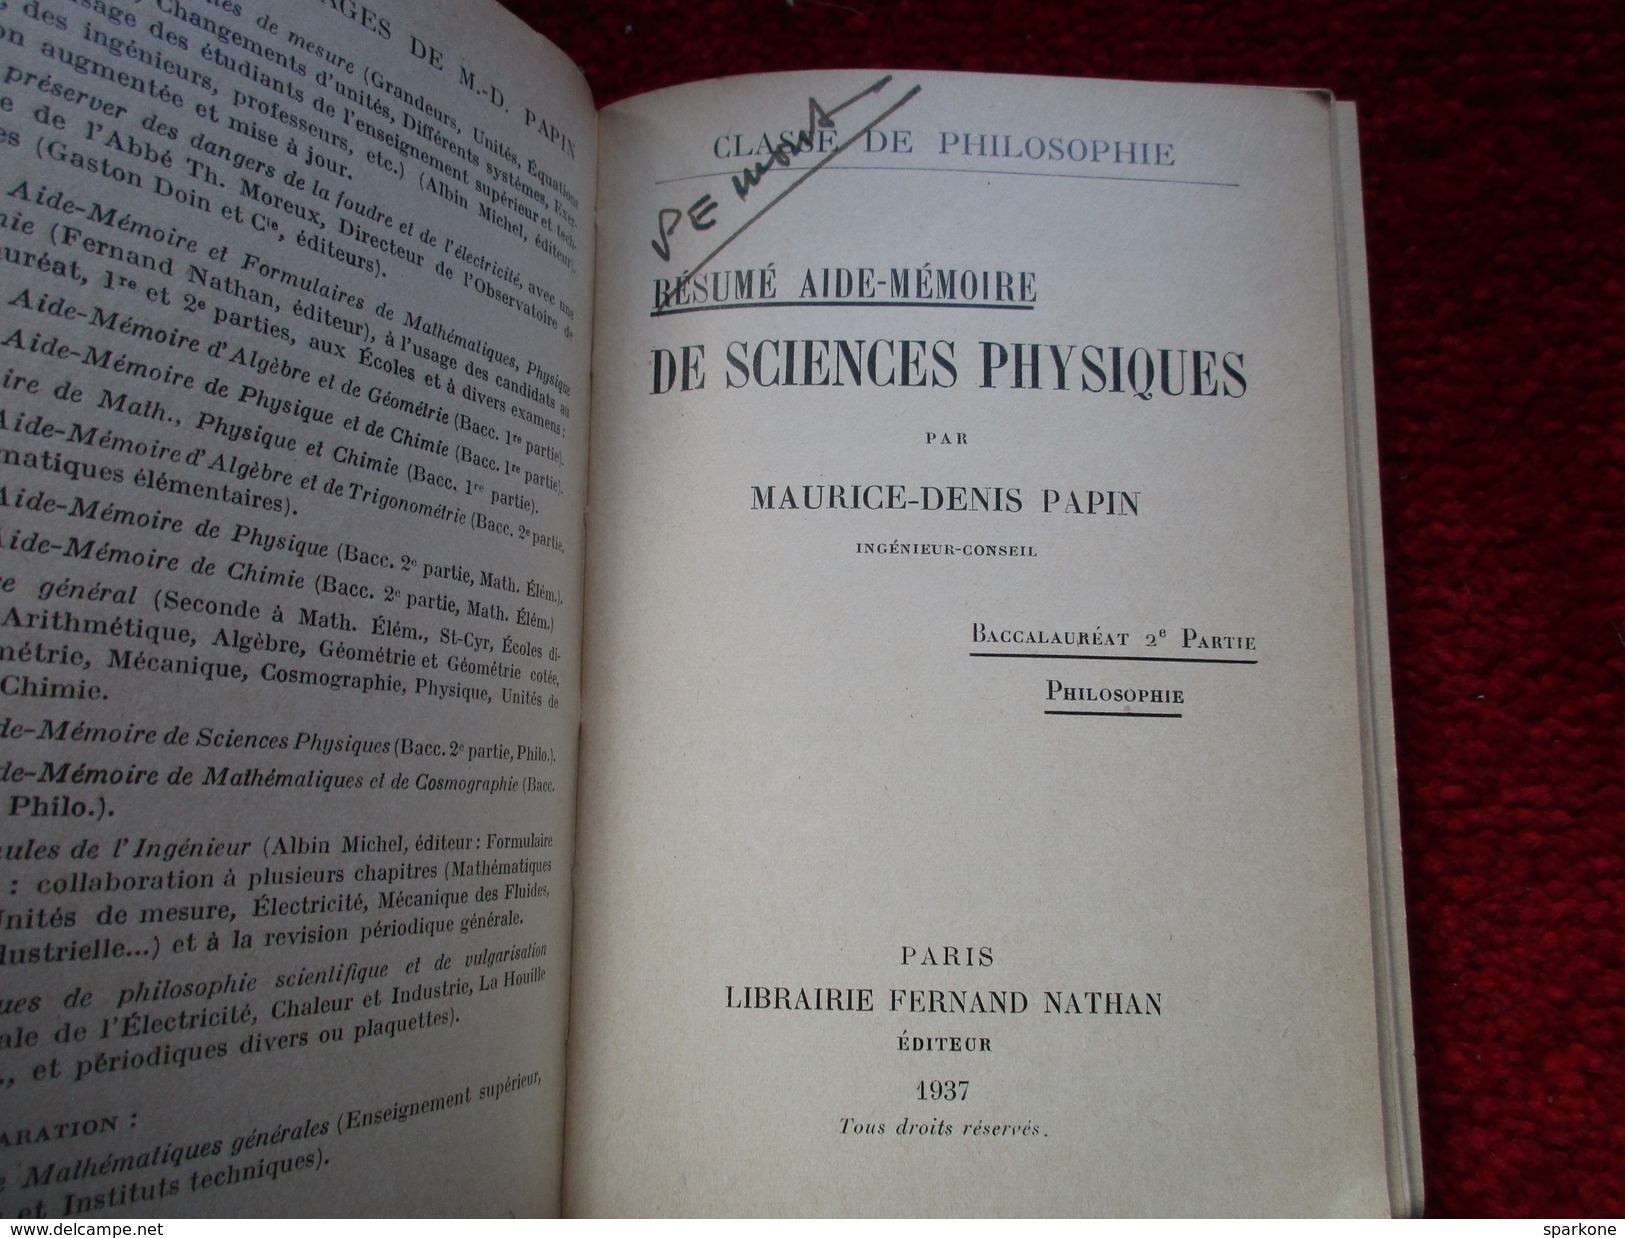 Résumé Aide-Mémoire De Sciences Physiques "Baccalauréat" (Maurice-Denis Papin) éditions Fernand Nathan De 1937 - 18+ Years Old